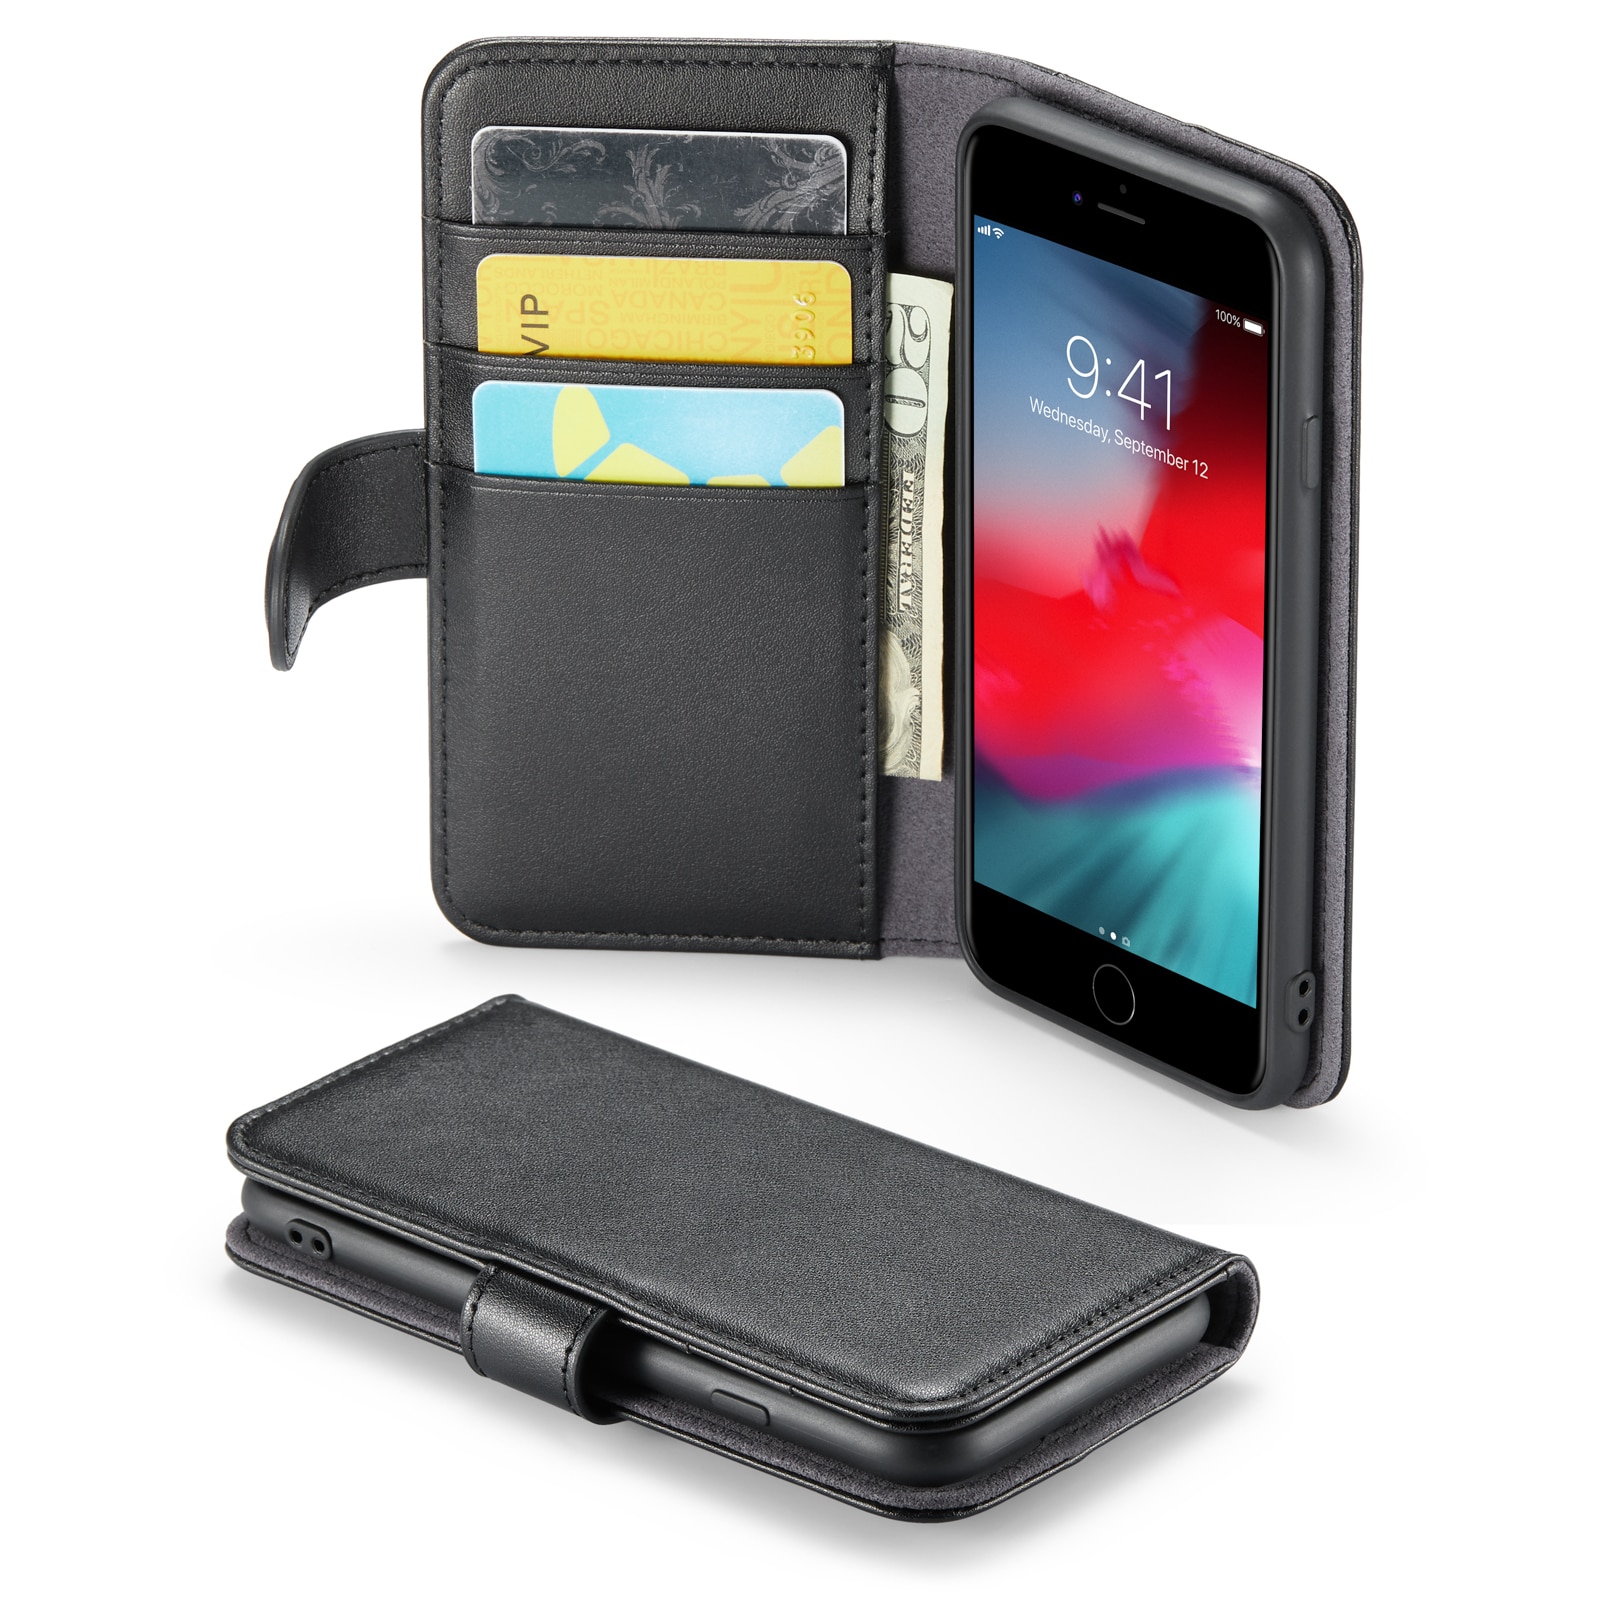 iPhone 7 Plånboksfodral i Äkta Läder, svart